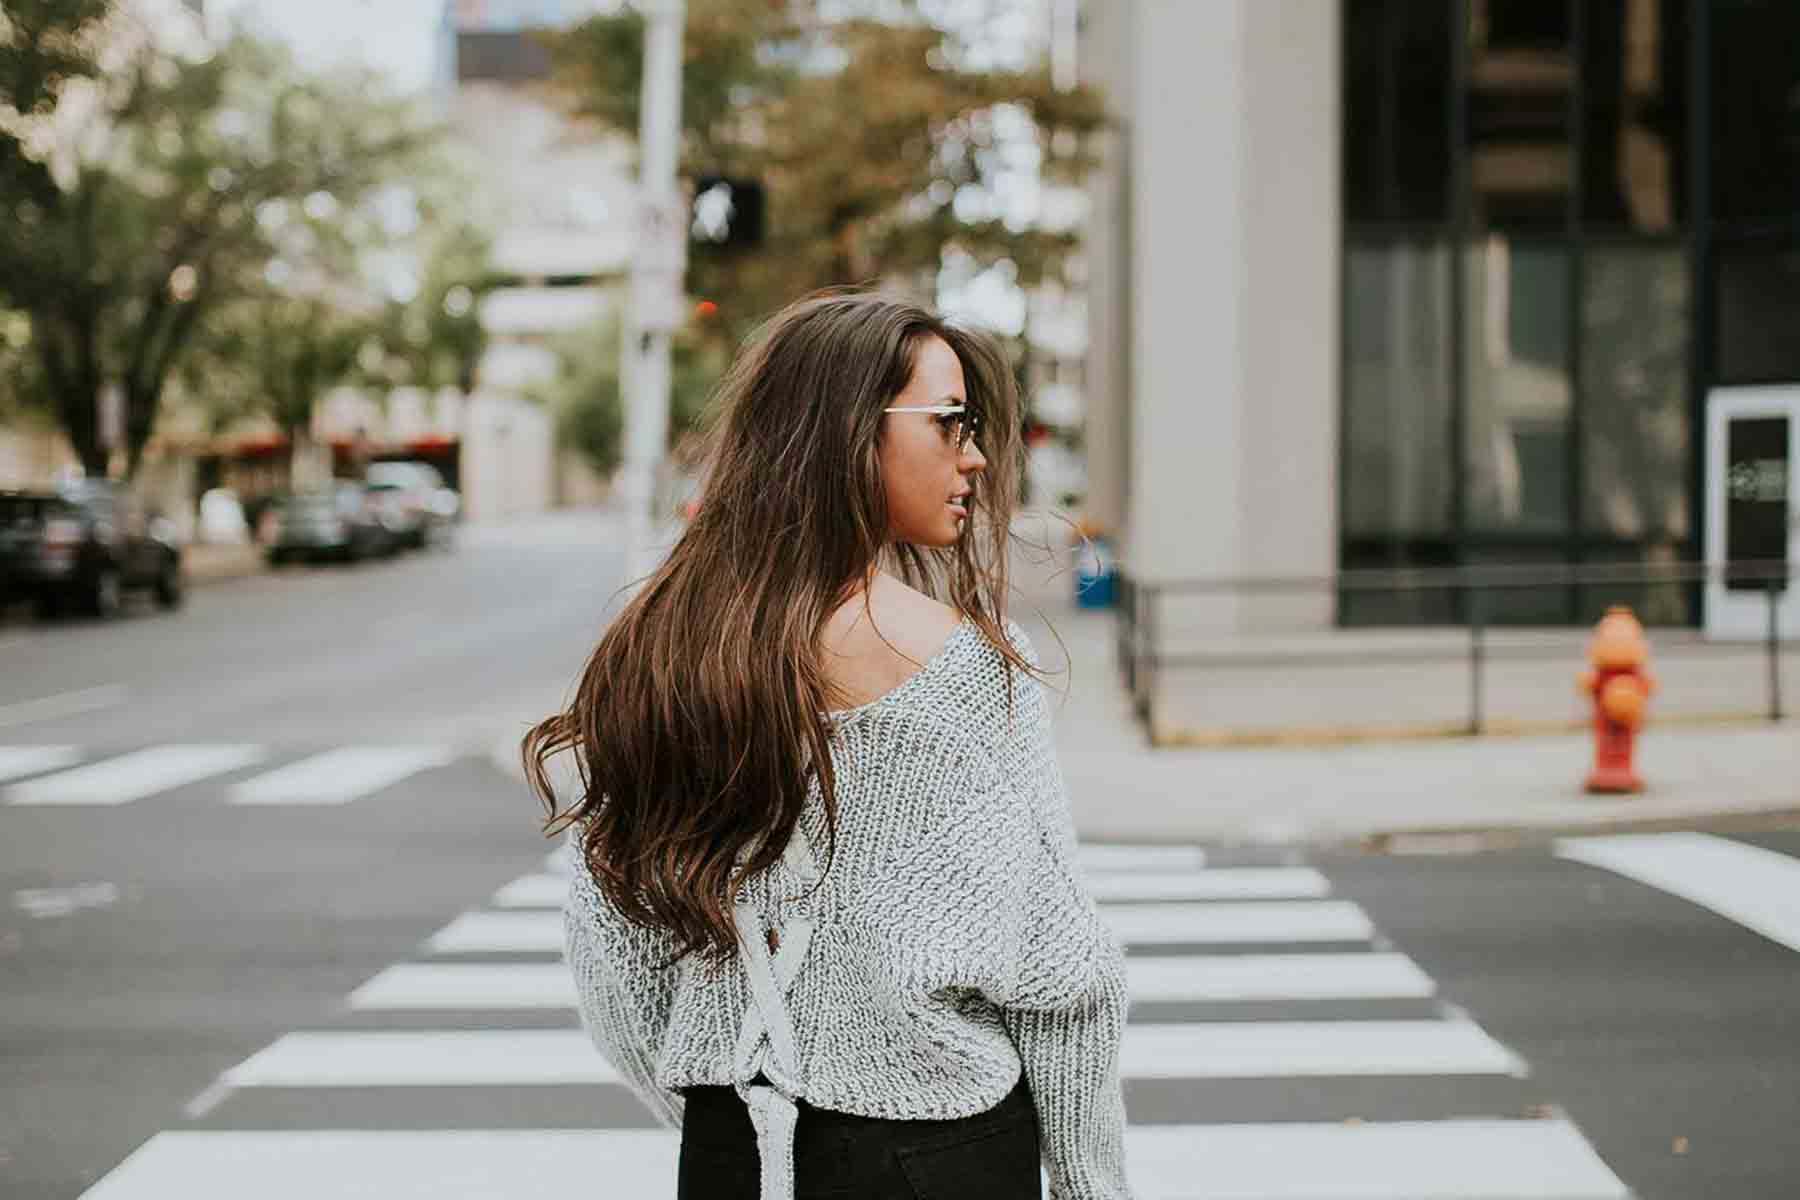 Woman using crosswalk in city